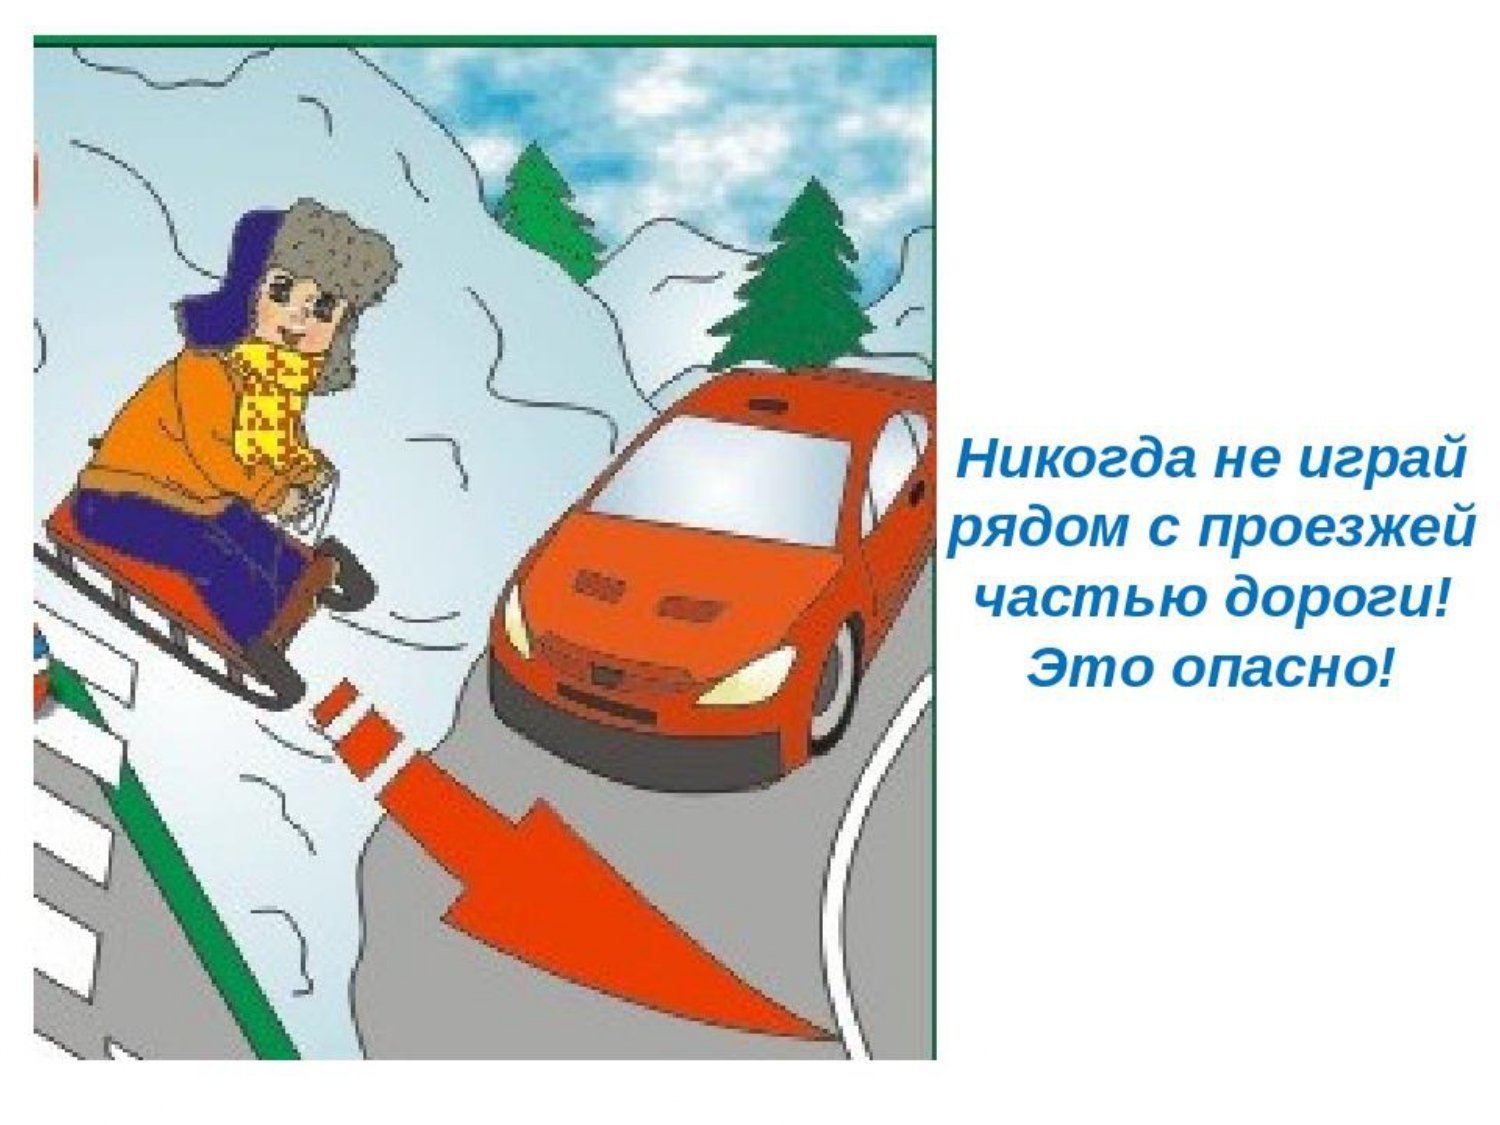 Никто никогда не ездит по шоссе. Опасные ситуации на дороге. Опасность на дороге. Опасности на дороге зимой для детей. ПДД зимой для детей в картинках.